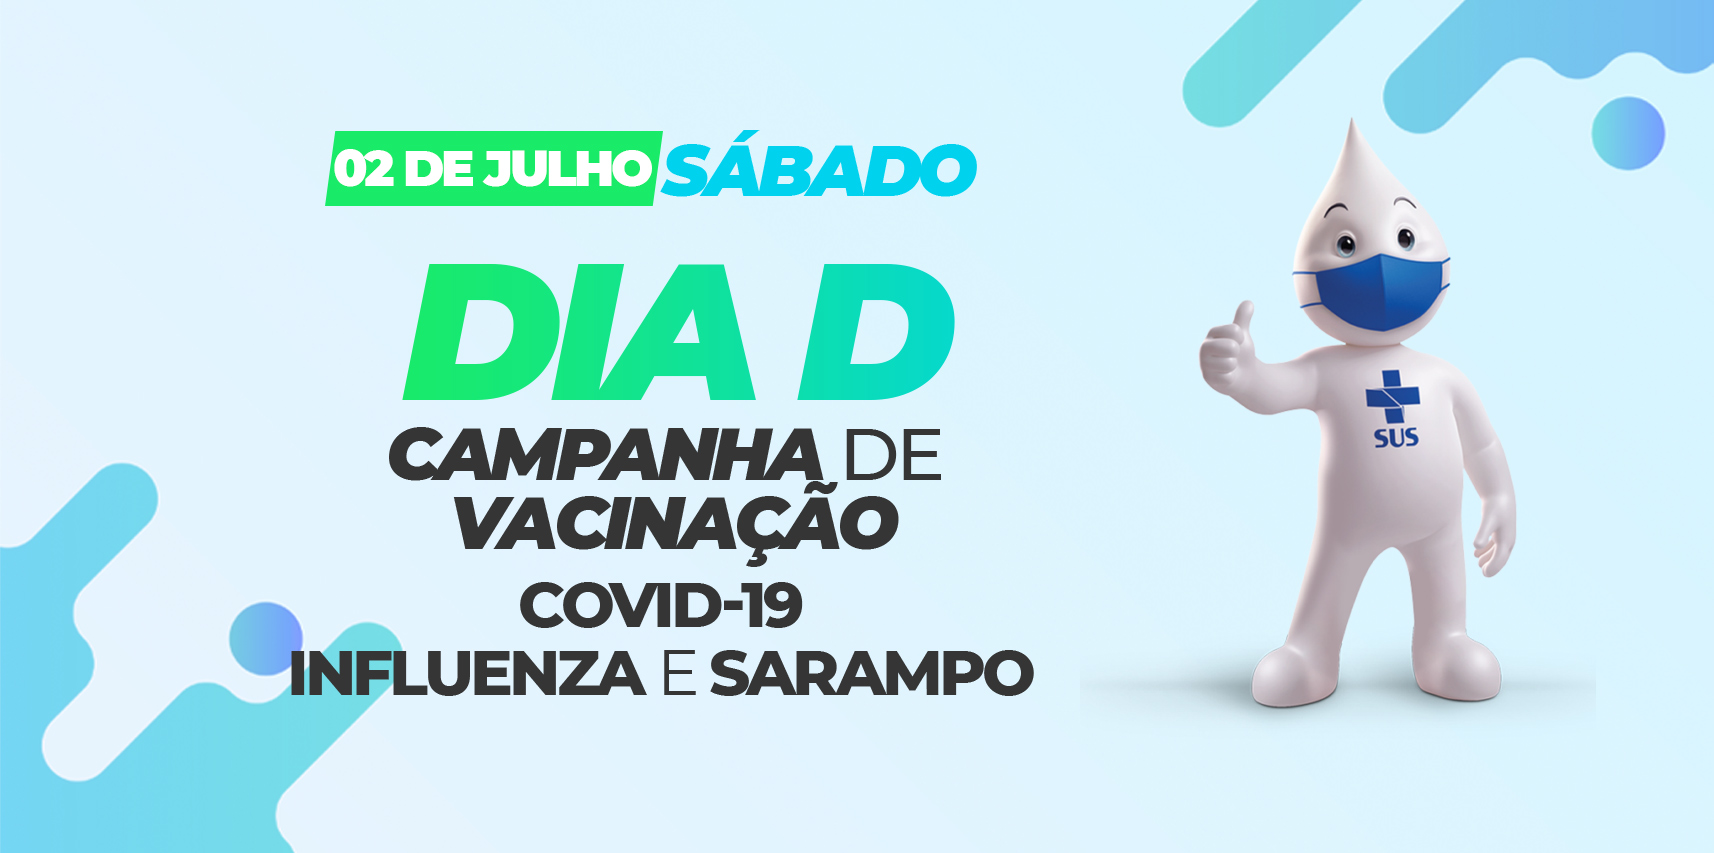 Sábado (02) é o Dia D de Vacinação contra Covid, Influenza e Sarampo em Vargem Alta